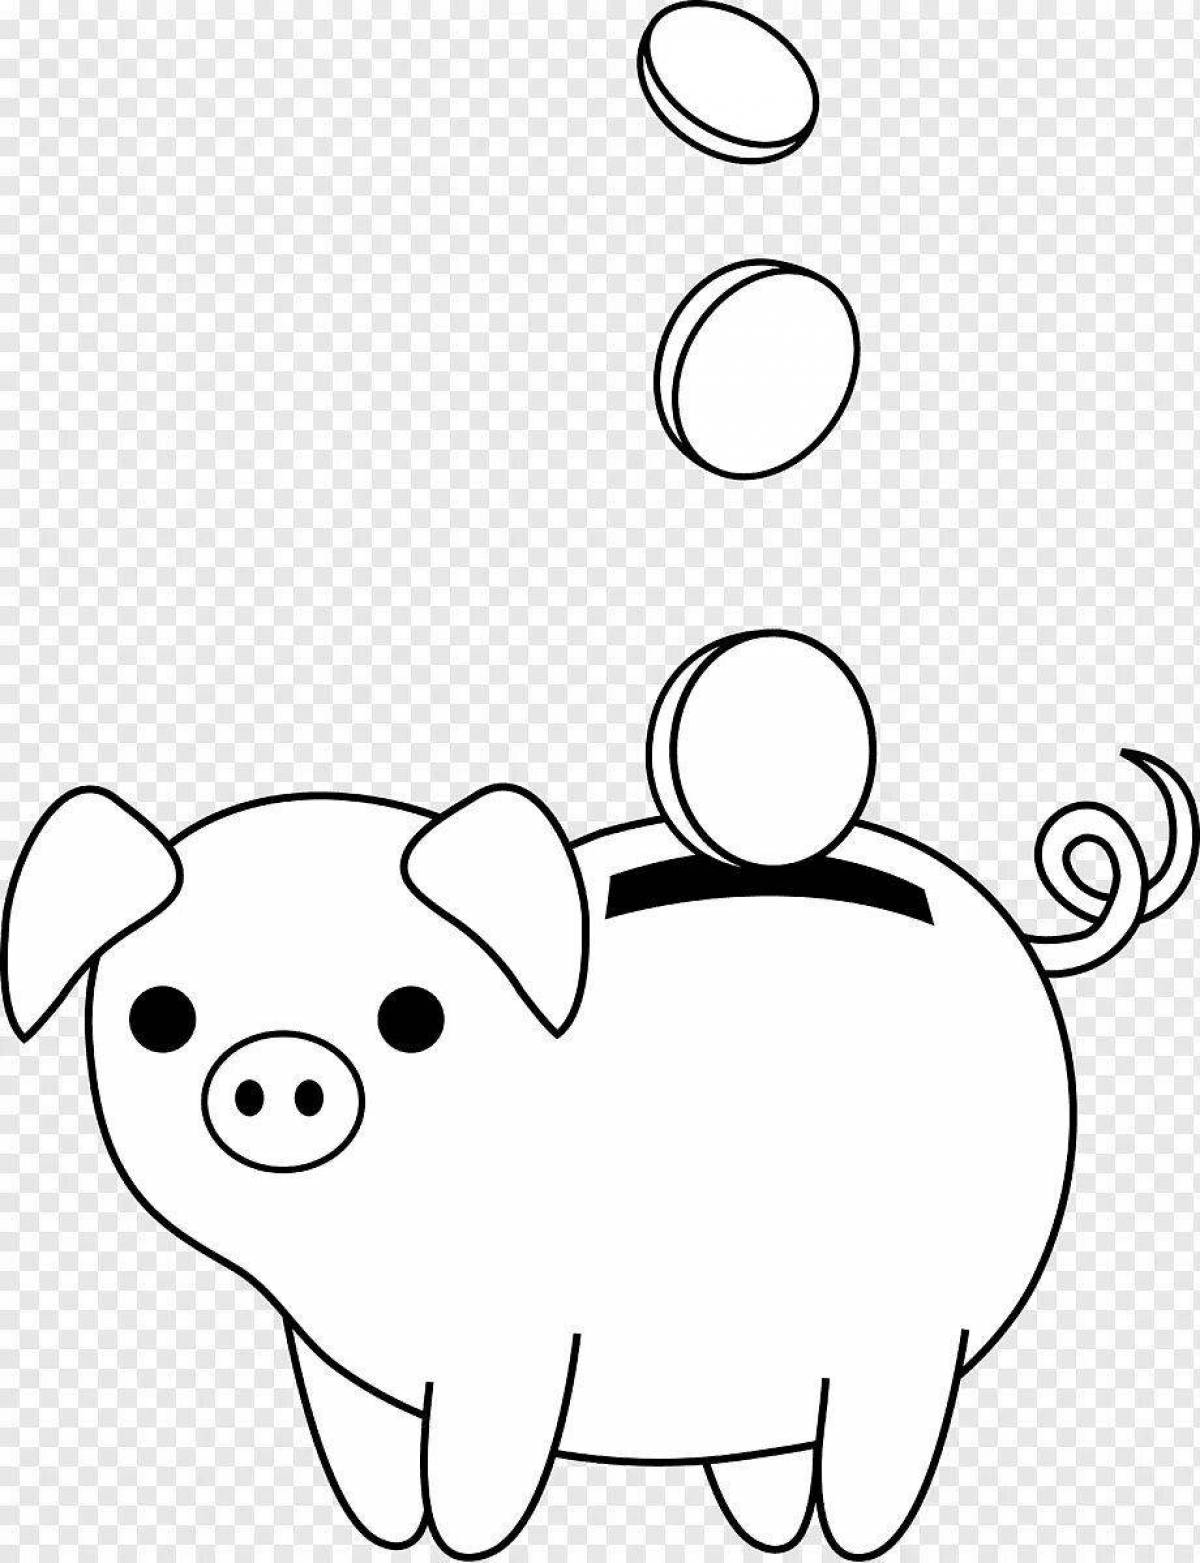 Piggy bank #7